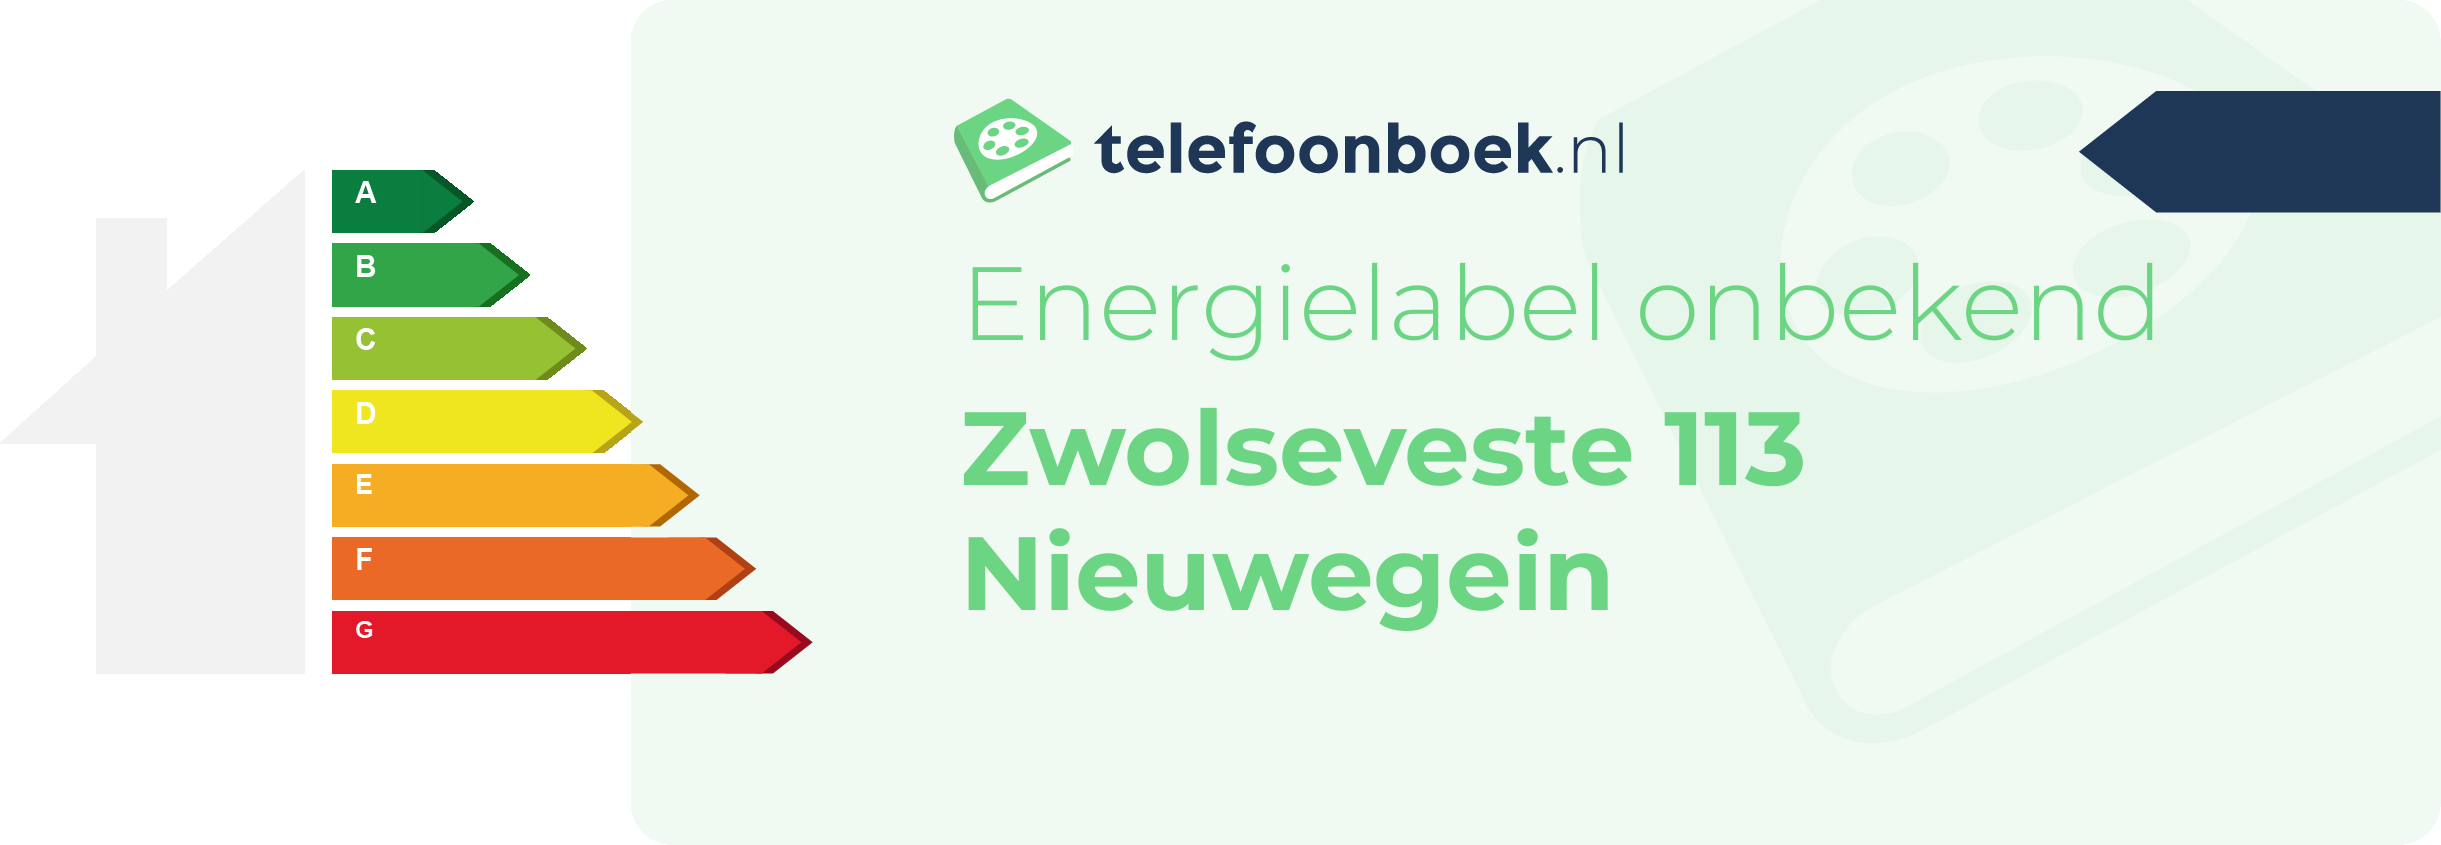 Energielabel Zwolseveste 113 Nieuwegein